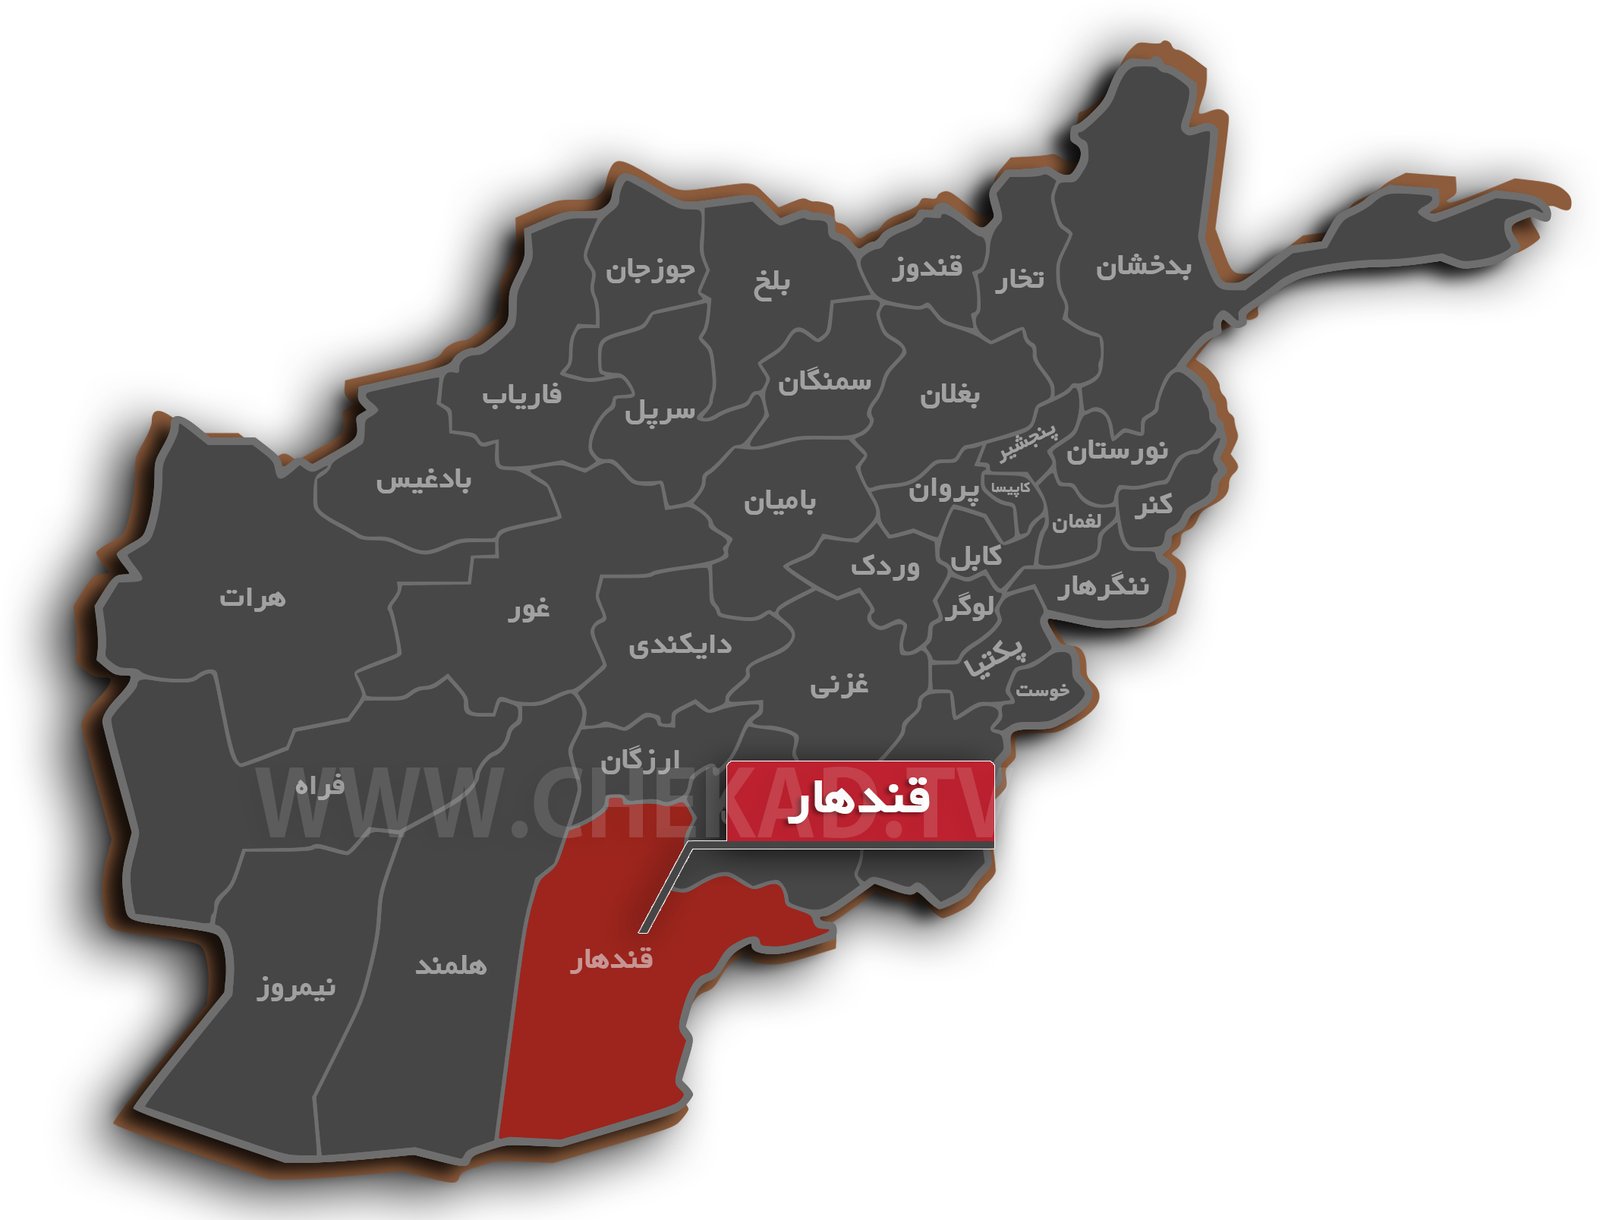 پولیس قندهار مخفیگاه طالبان را هدف قرار داد